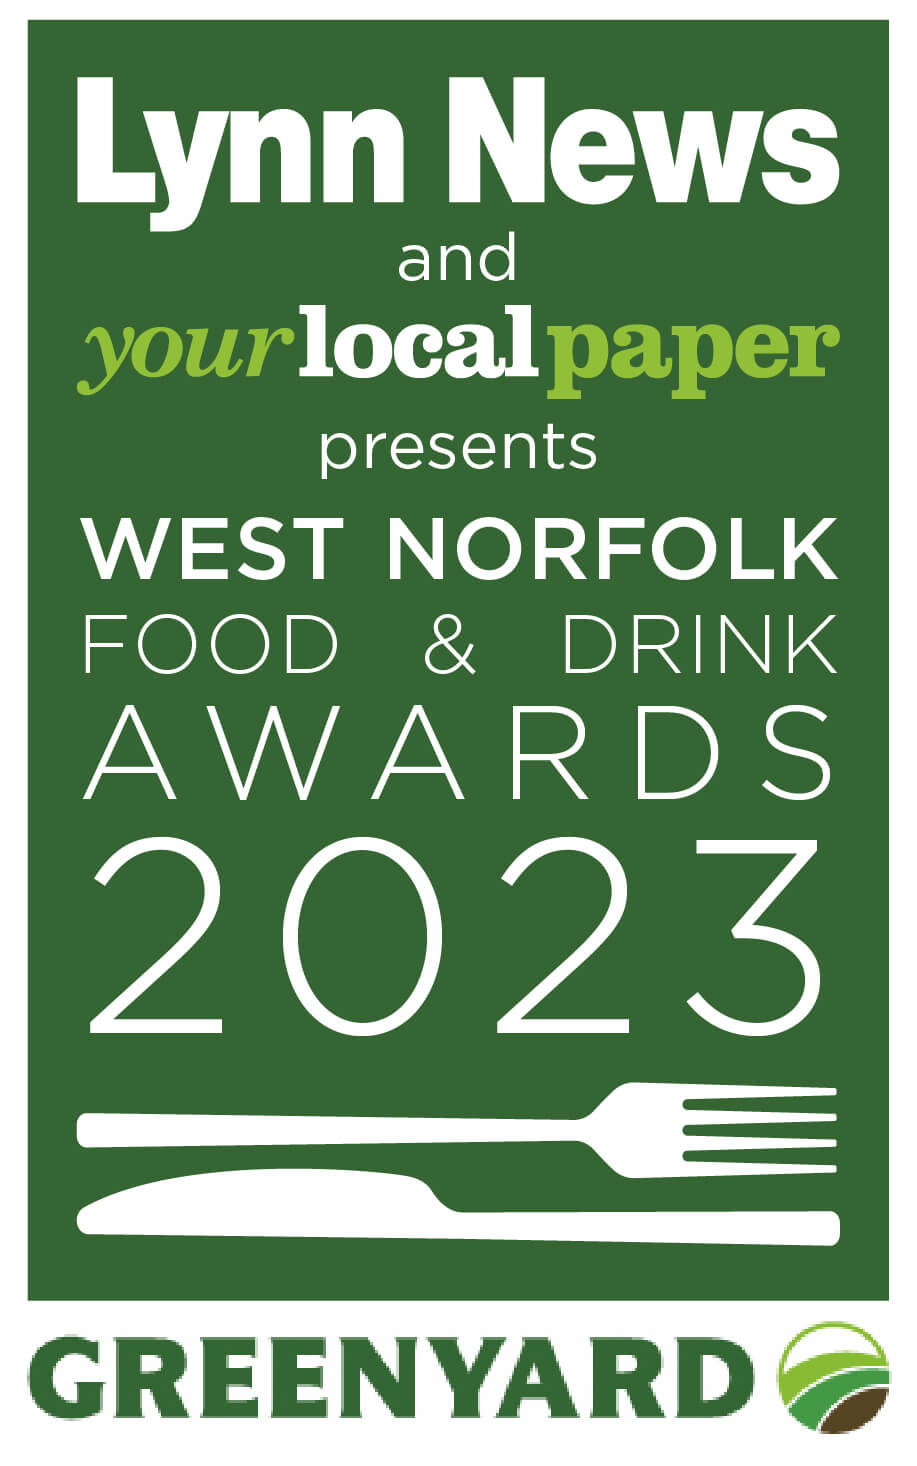 West Norfolk Food & Drink Awards